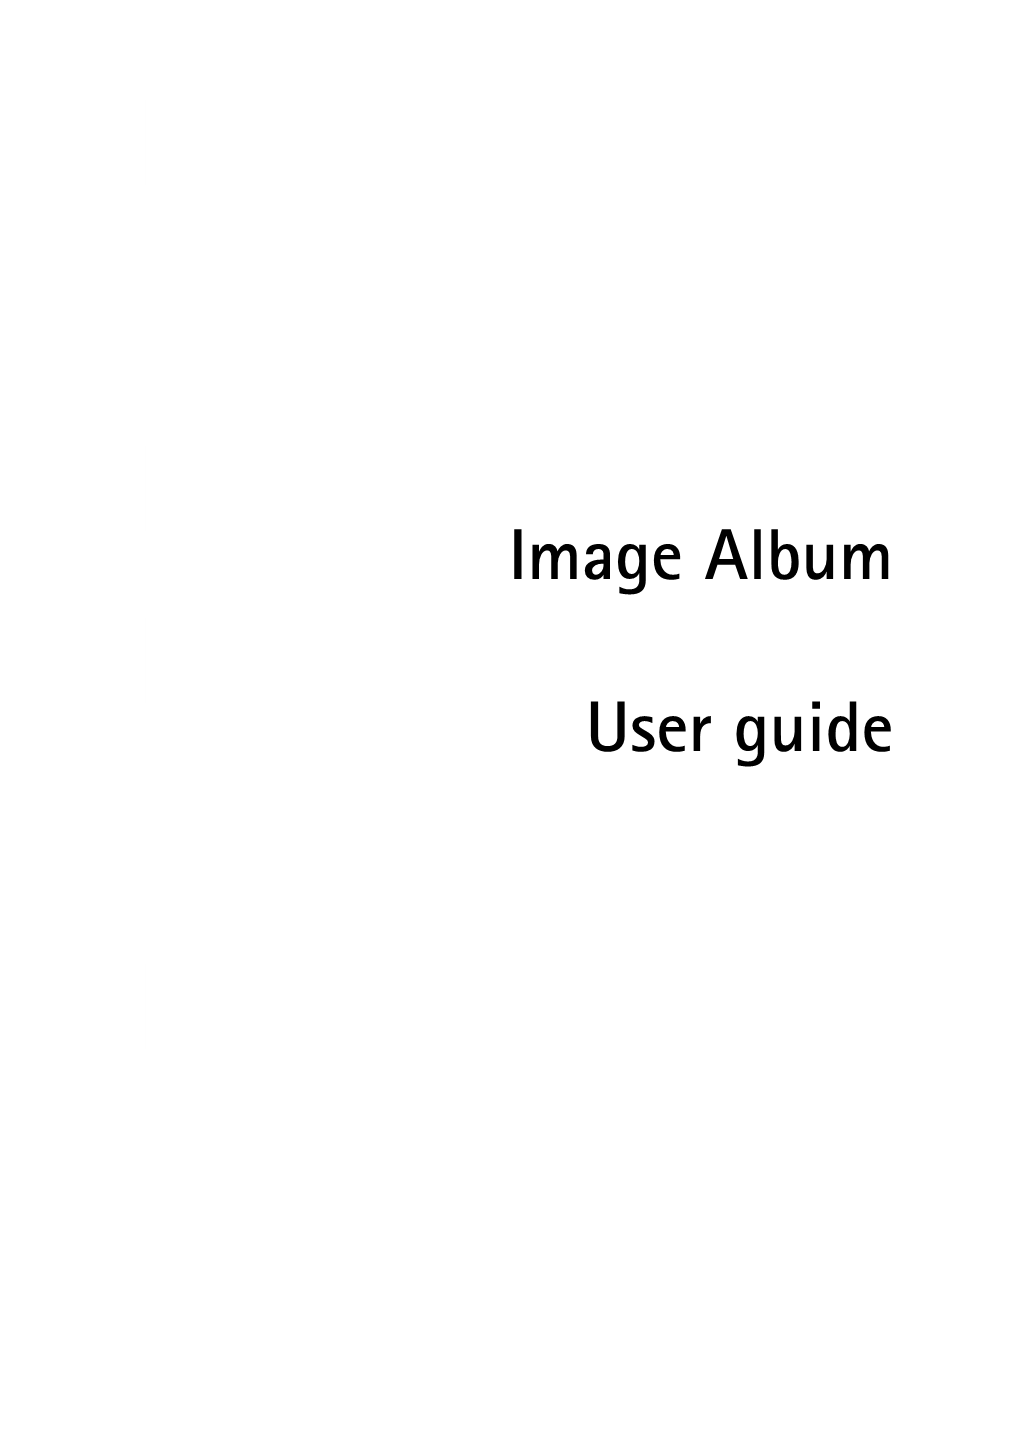 Nokia Image Album User's Guide